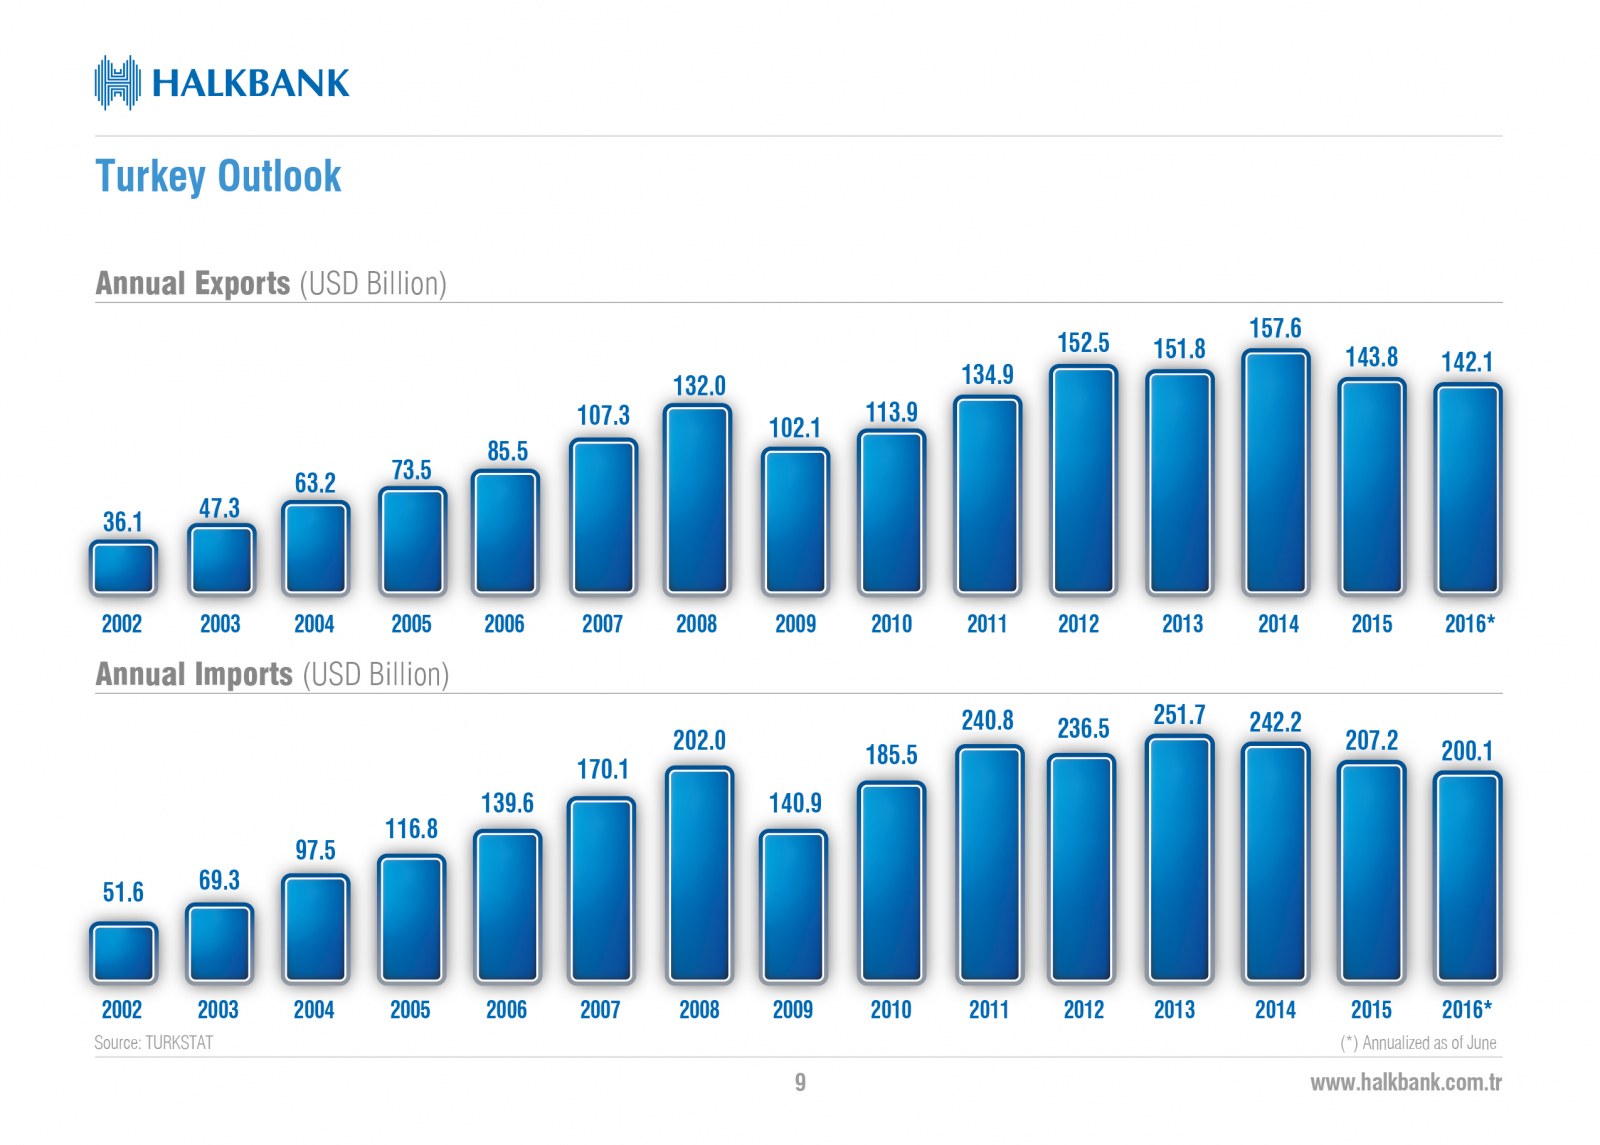 HALKBANK / Yatırımcı İlişkileri Profil Sunumu / Investor Relations Profile